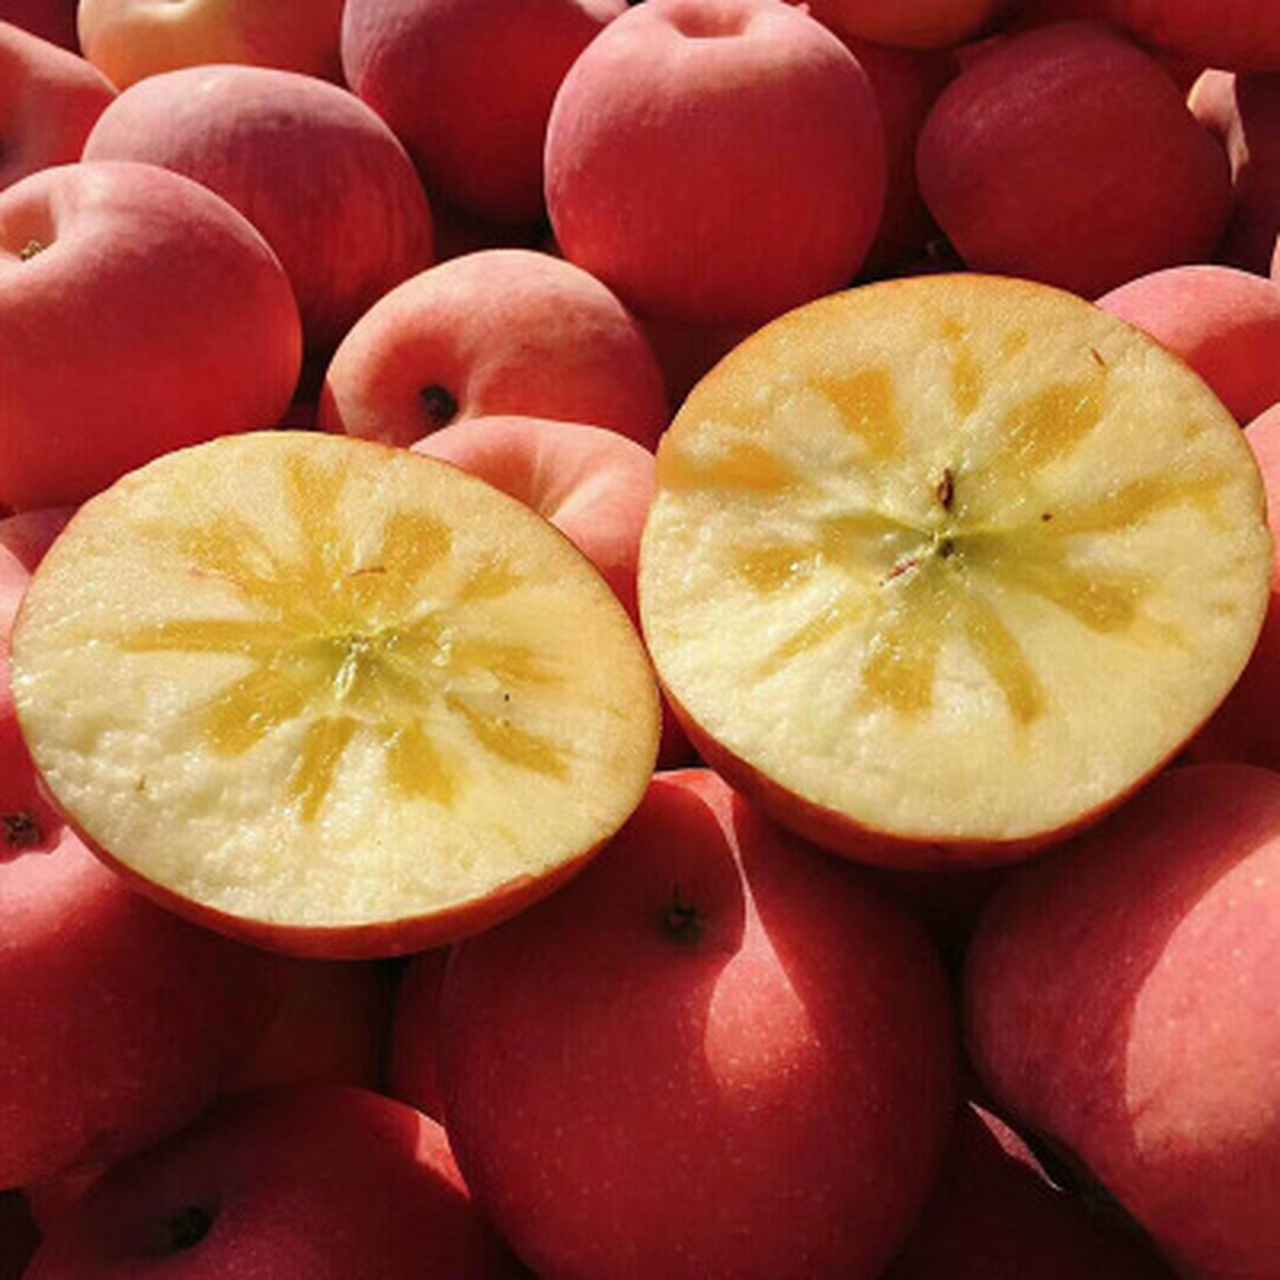 红富士苹果可以调节肠胃功能,降低胆固醇,降血压,防癌,减肥,现在研究